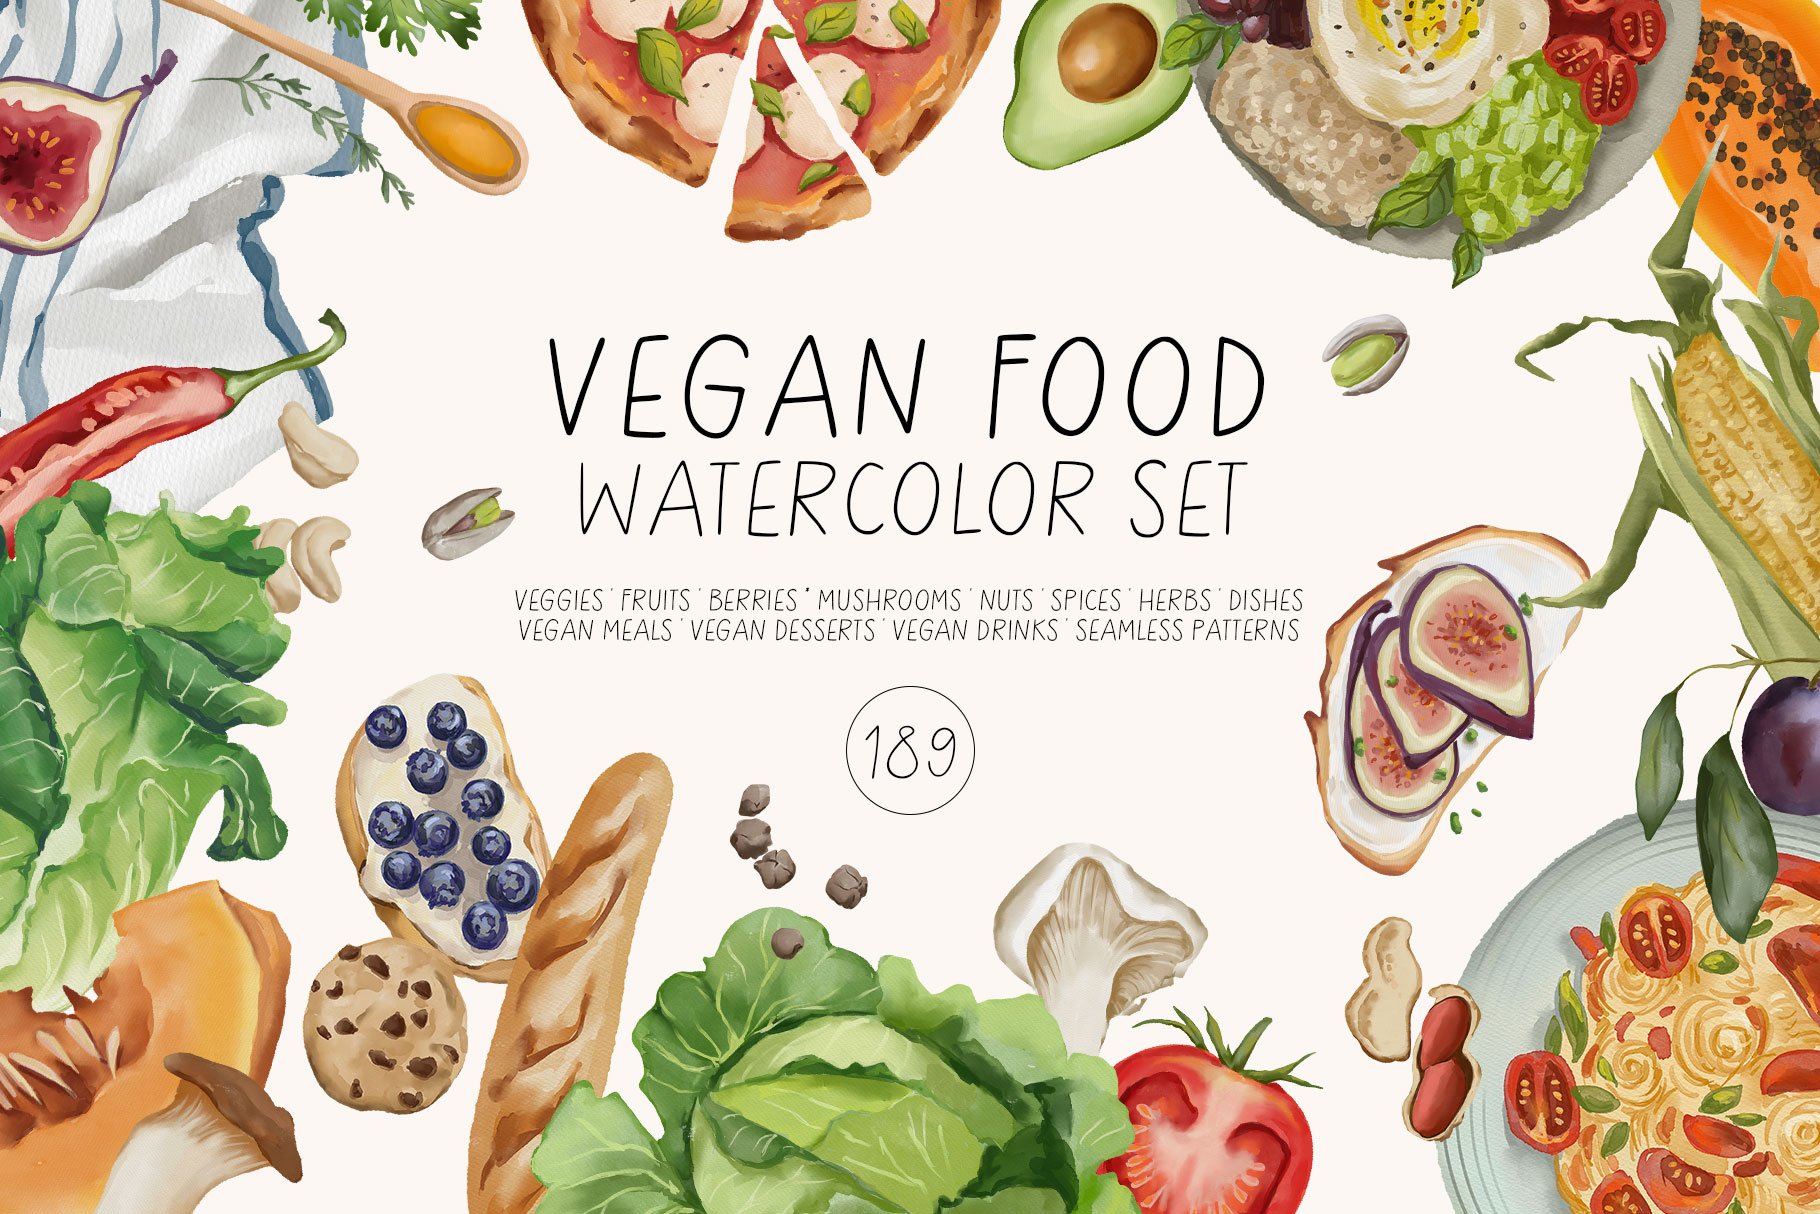 VEGAN FOOD watercolor set cover image.